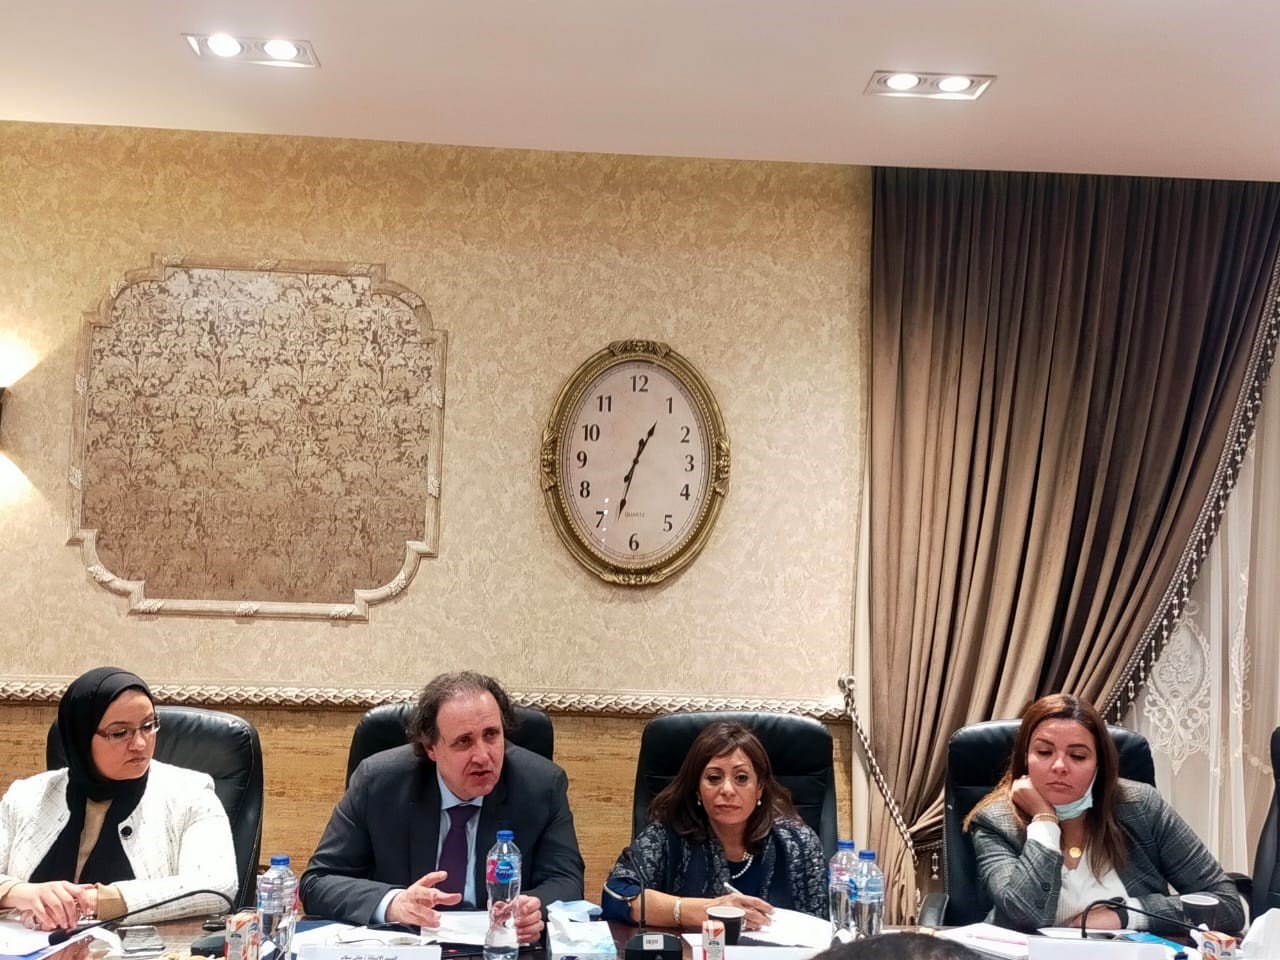 توقيع بروتوكول تعاون لتيسير إجراءات الصادرات المصرية بين المجلس التصديري للغزل والمنسوجات والمفروشات المنزلية ومصلحة الجمارك المصرية